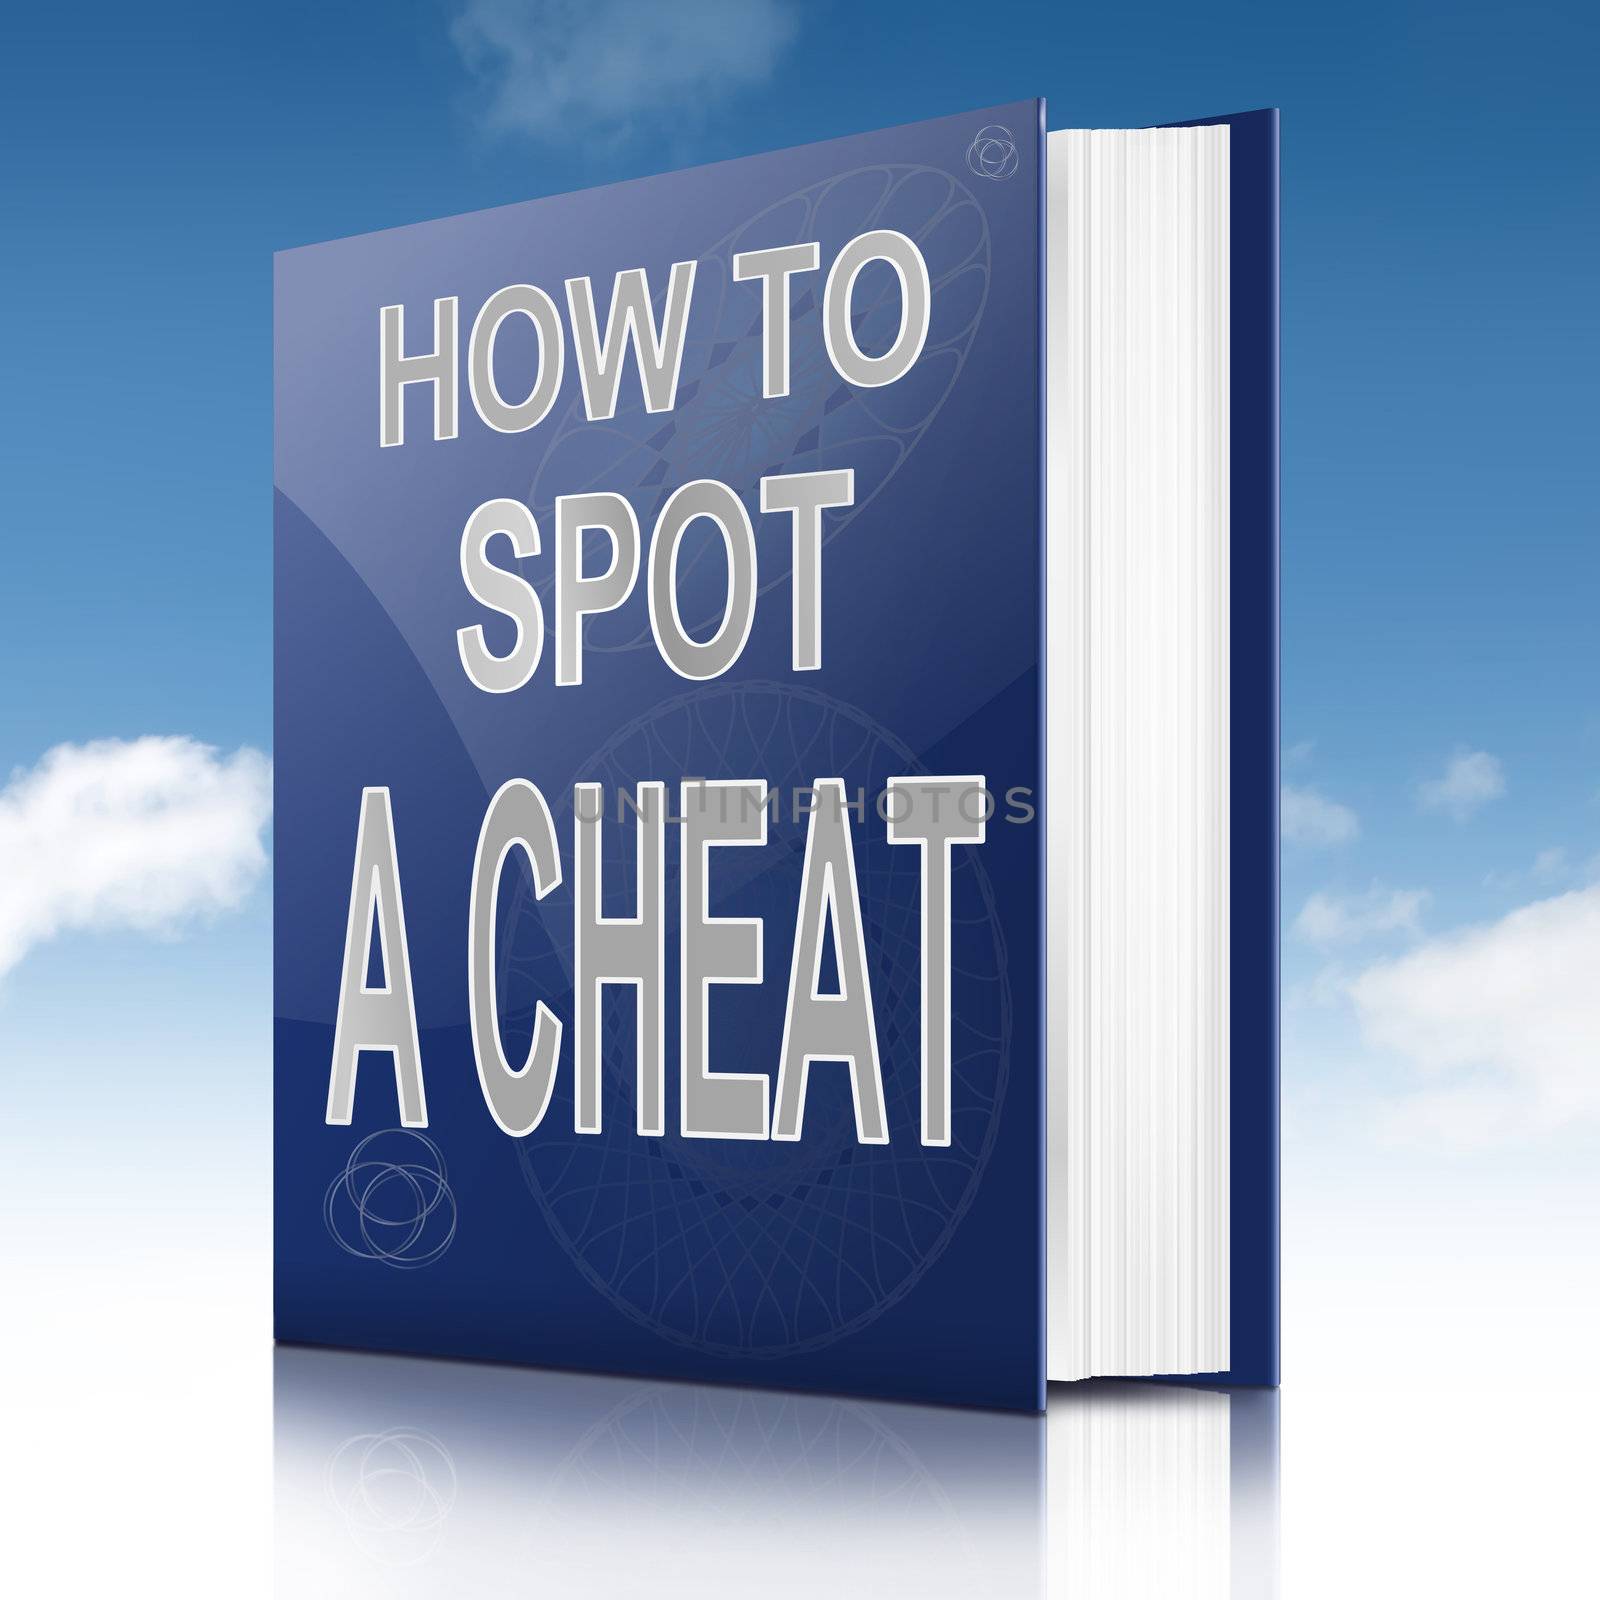 Spot a cheat. by 72soul